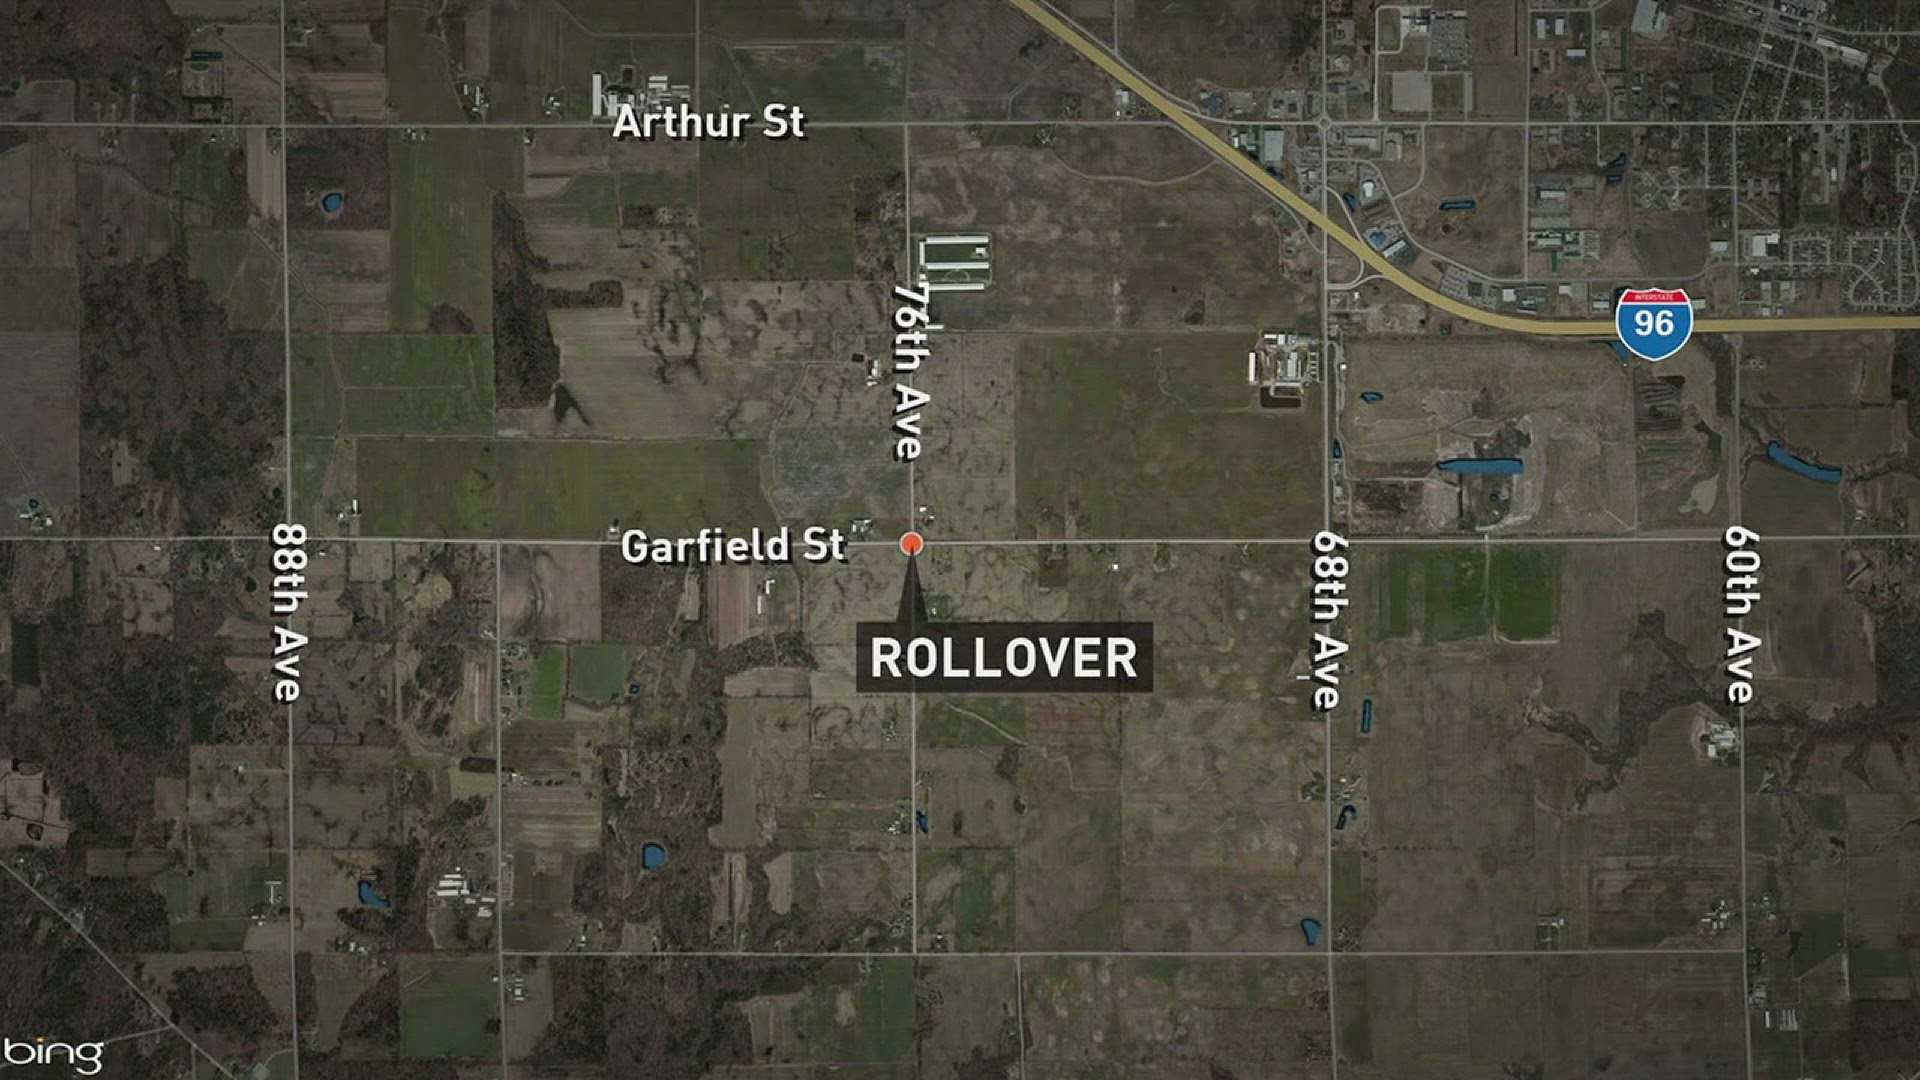 4 teens hurt in rollover crash